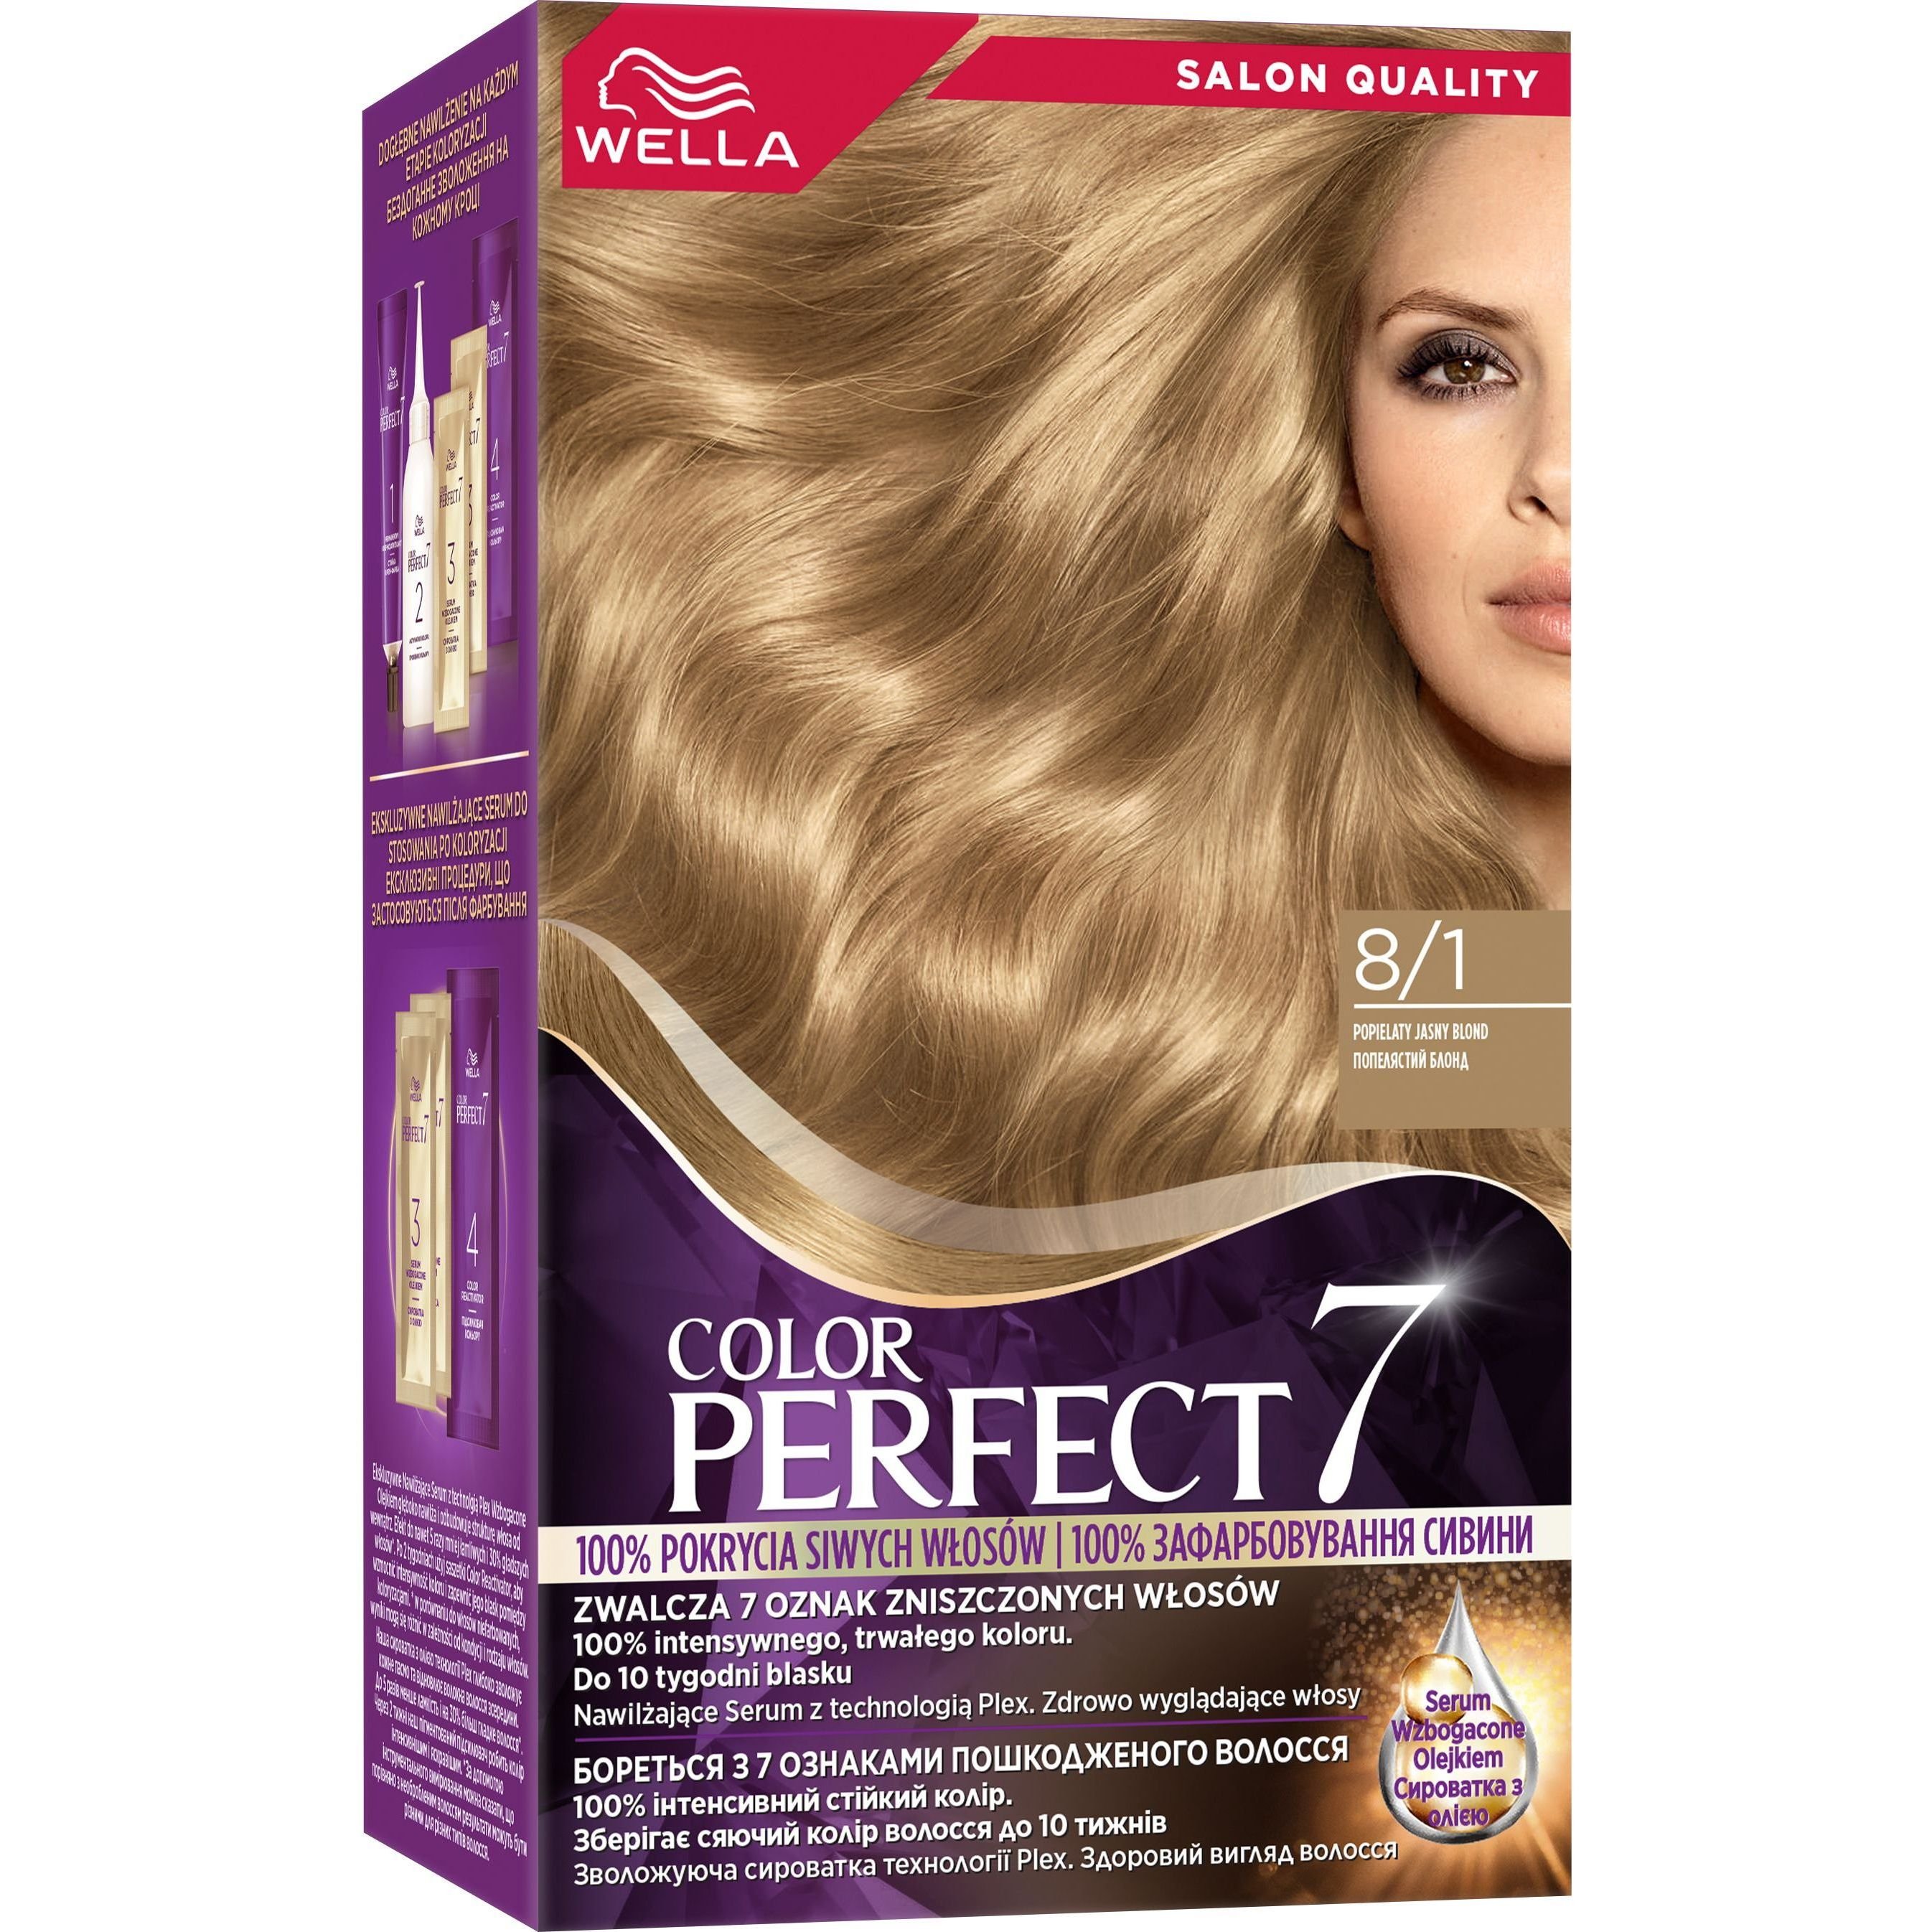 Стійка крем-фарба для волосся Wella Color Perfect 8/1 Попелястий блонд (4064666598383) - фото 1